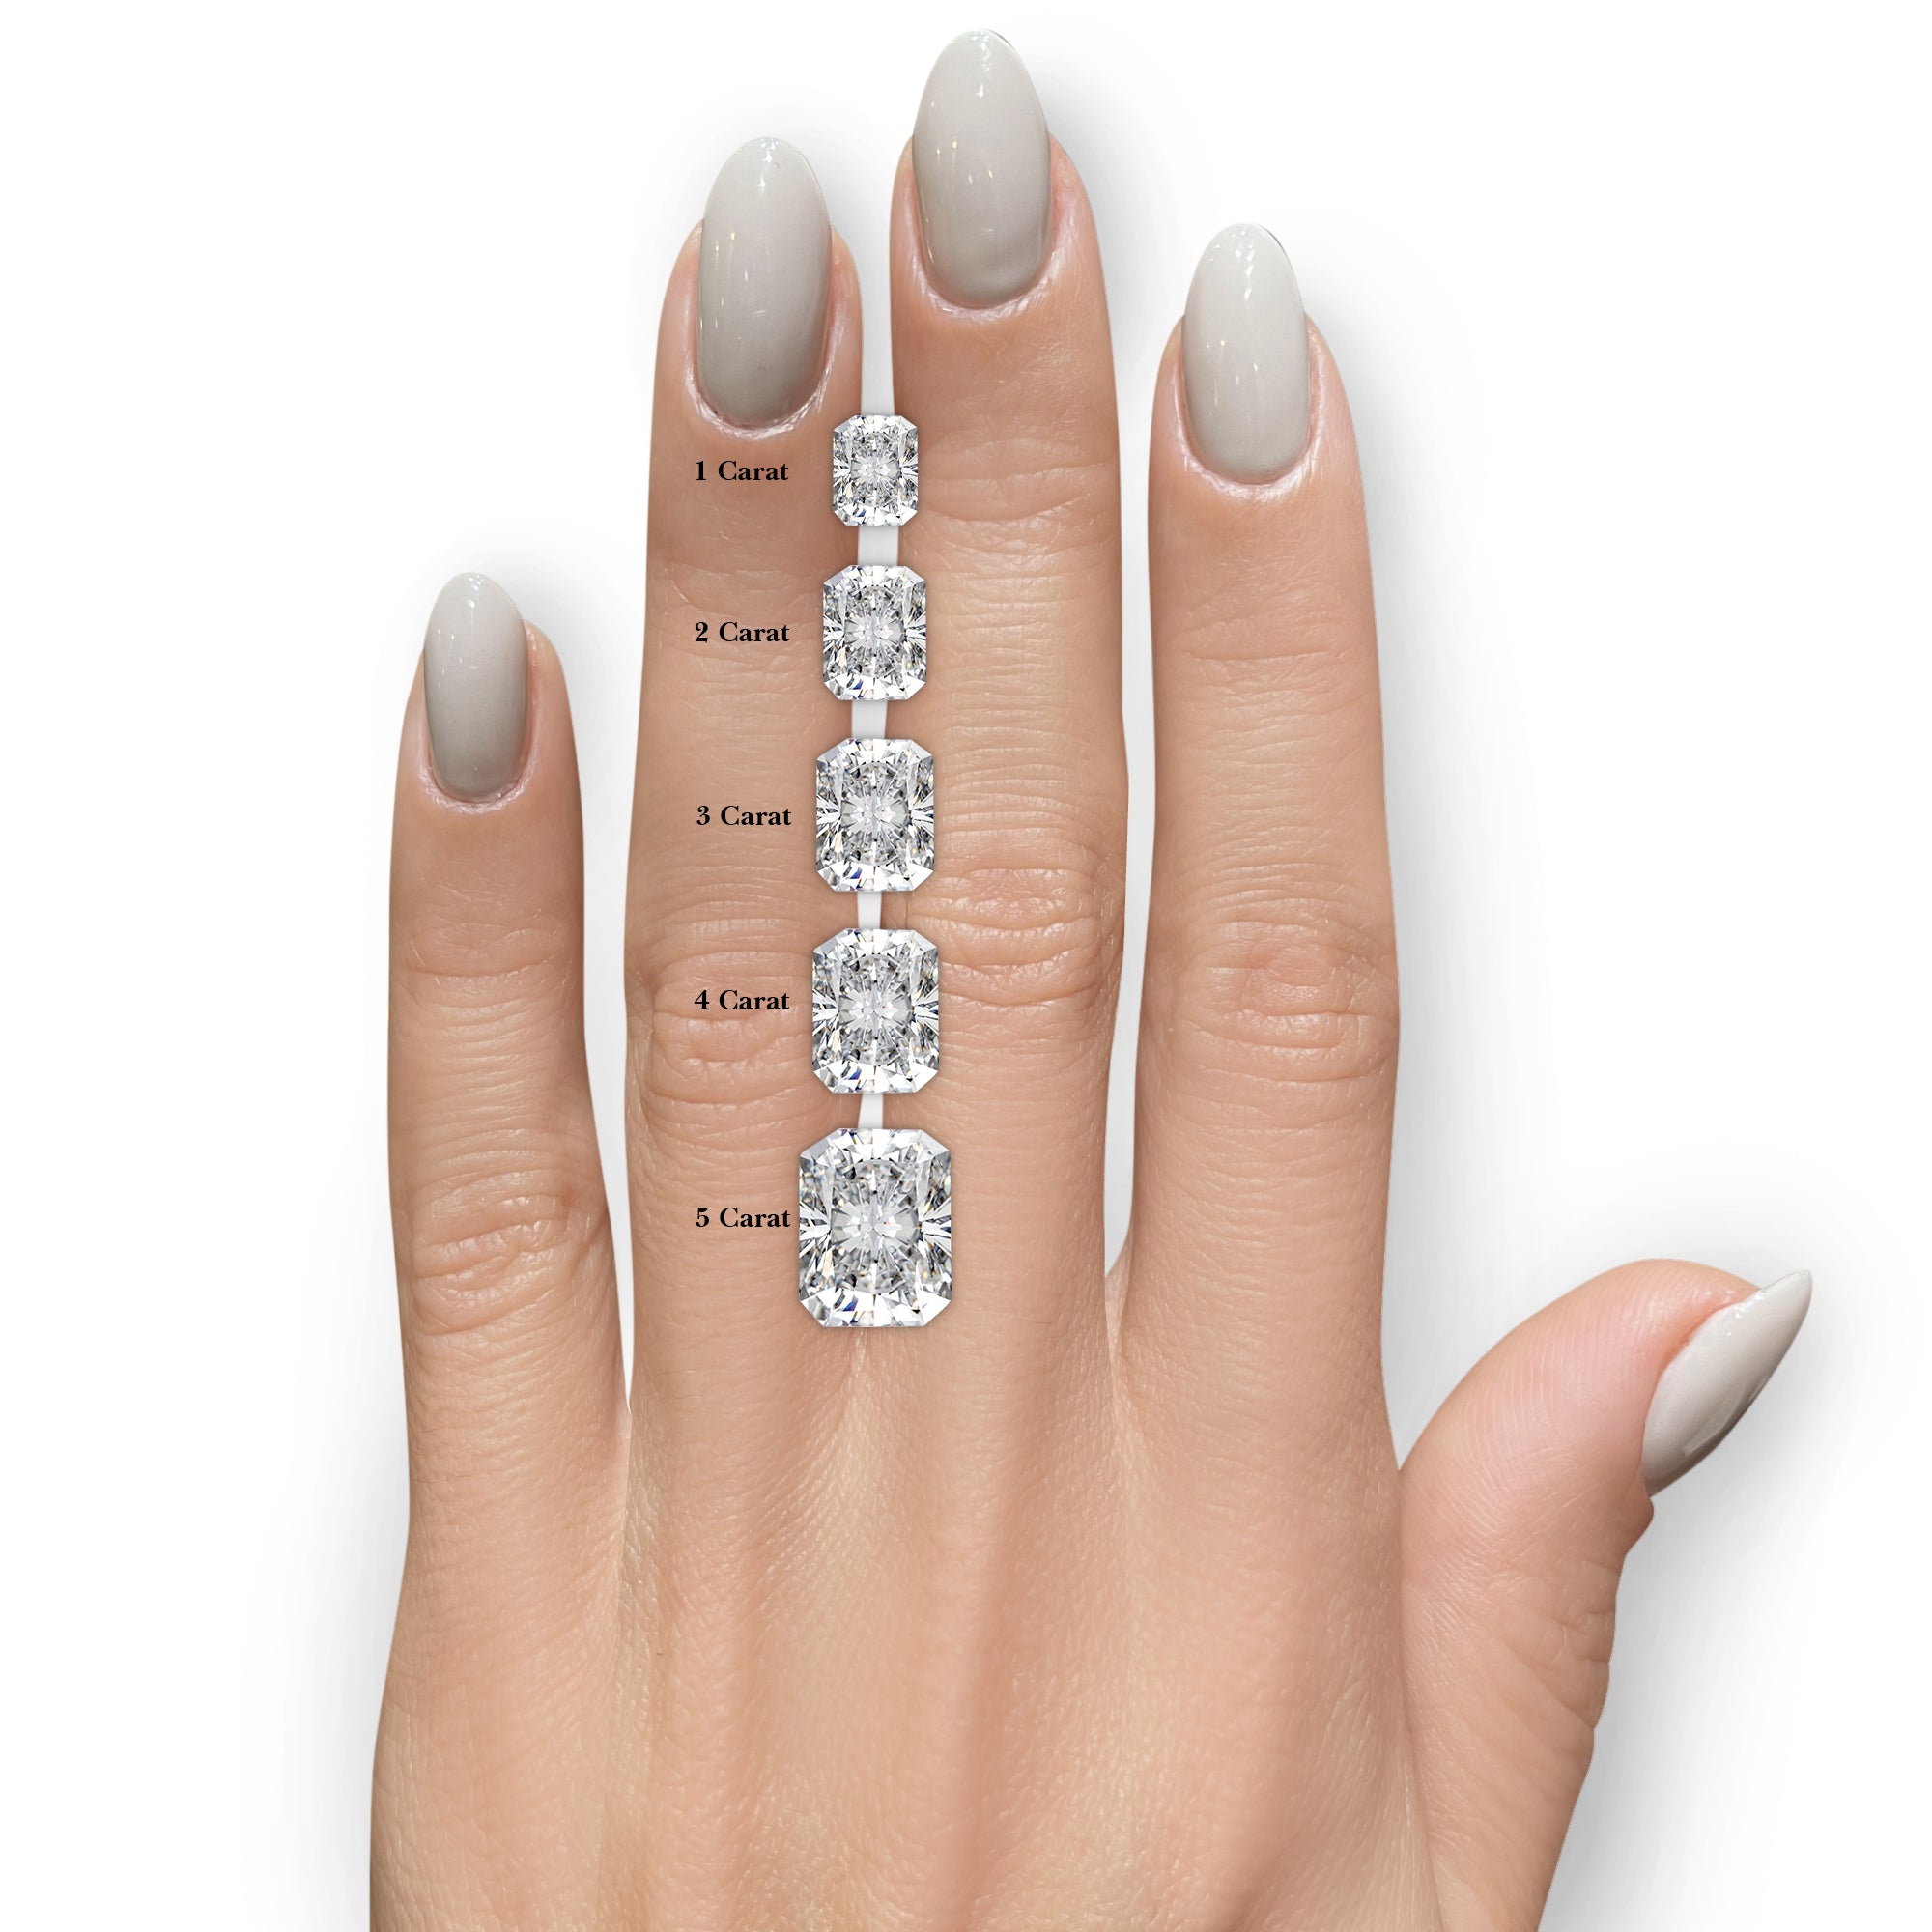 Pamela Moissanite & Diamonds Ring -Platinum